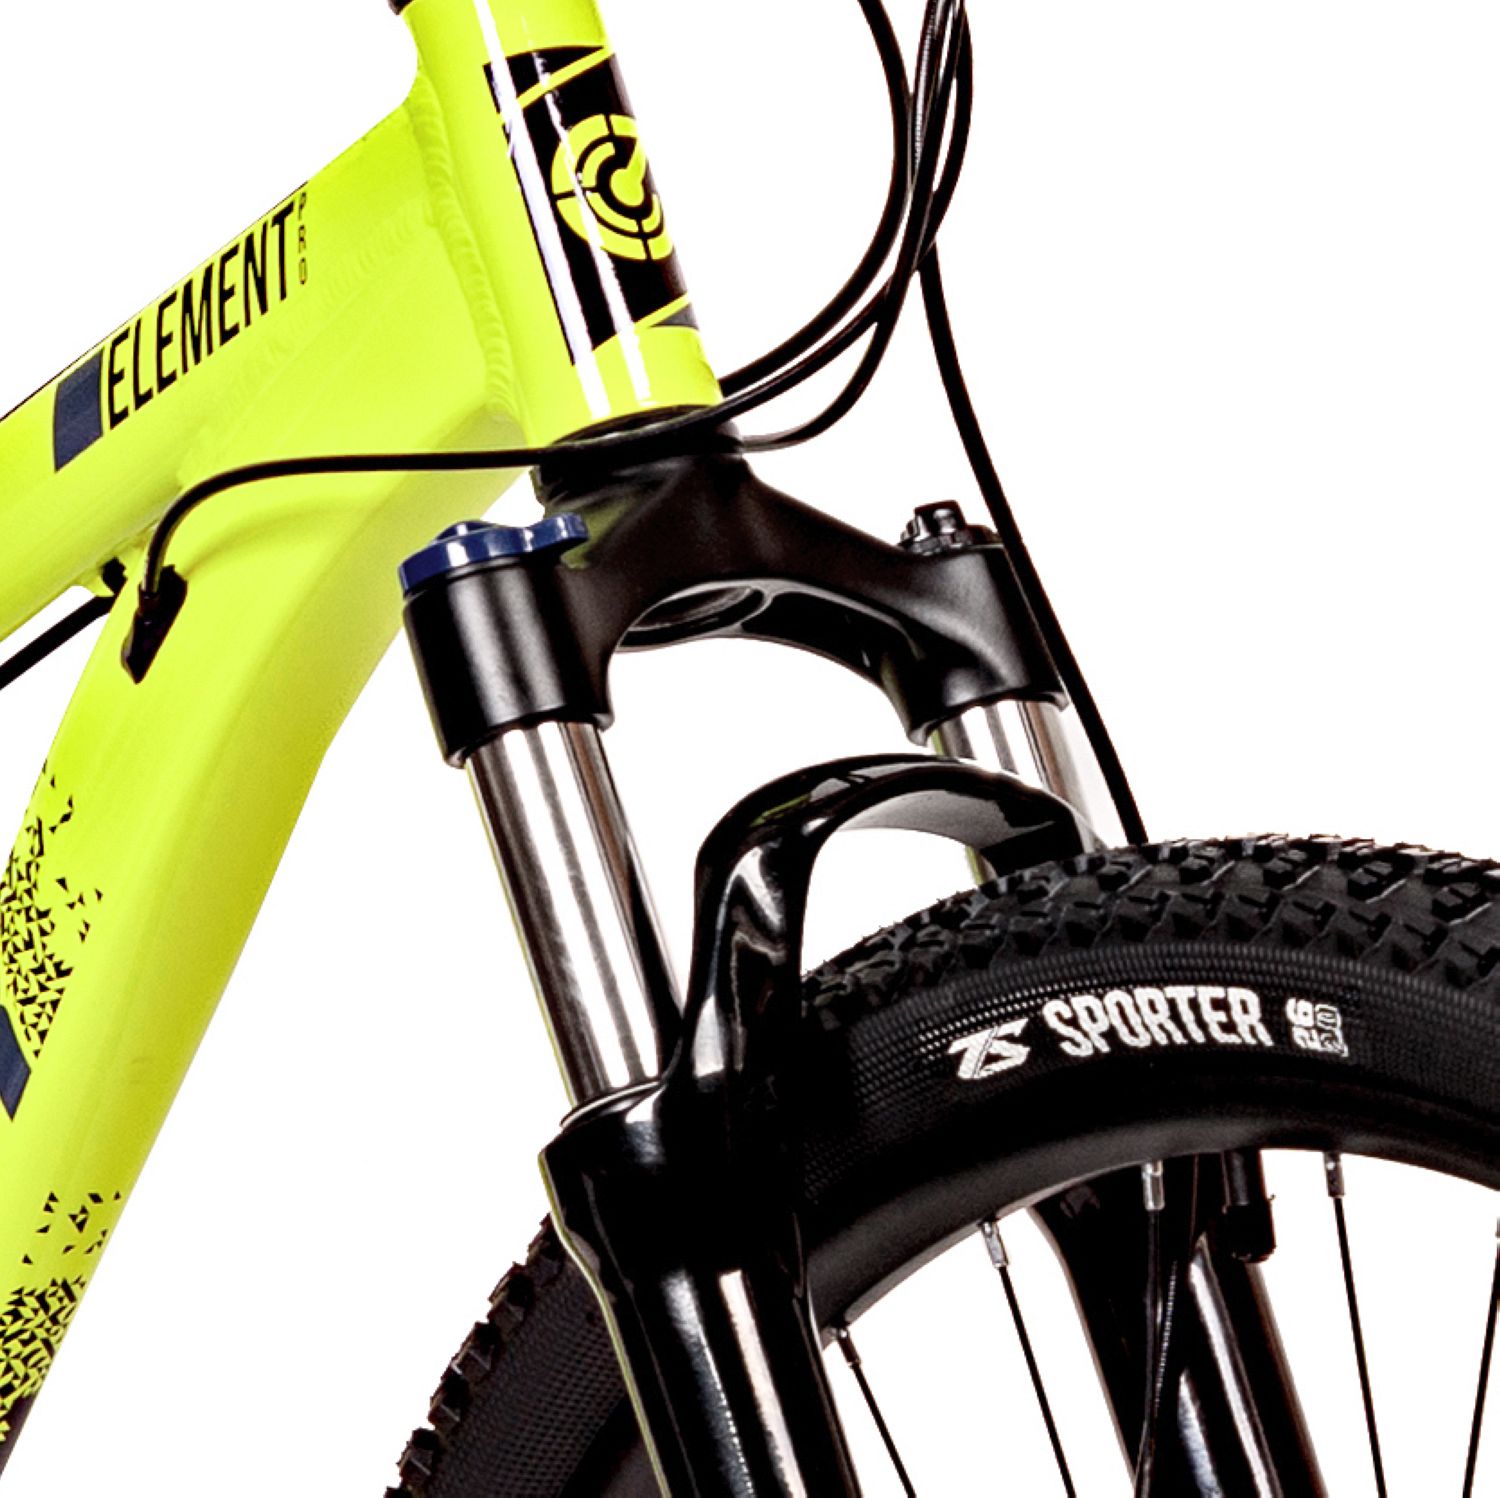 Горный велосипед Stinger Element Pro 26, год 2023, цвет Зеленый, ростовка 14